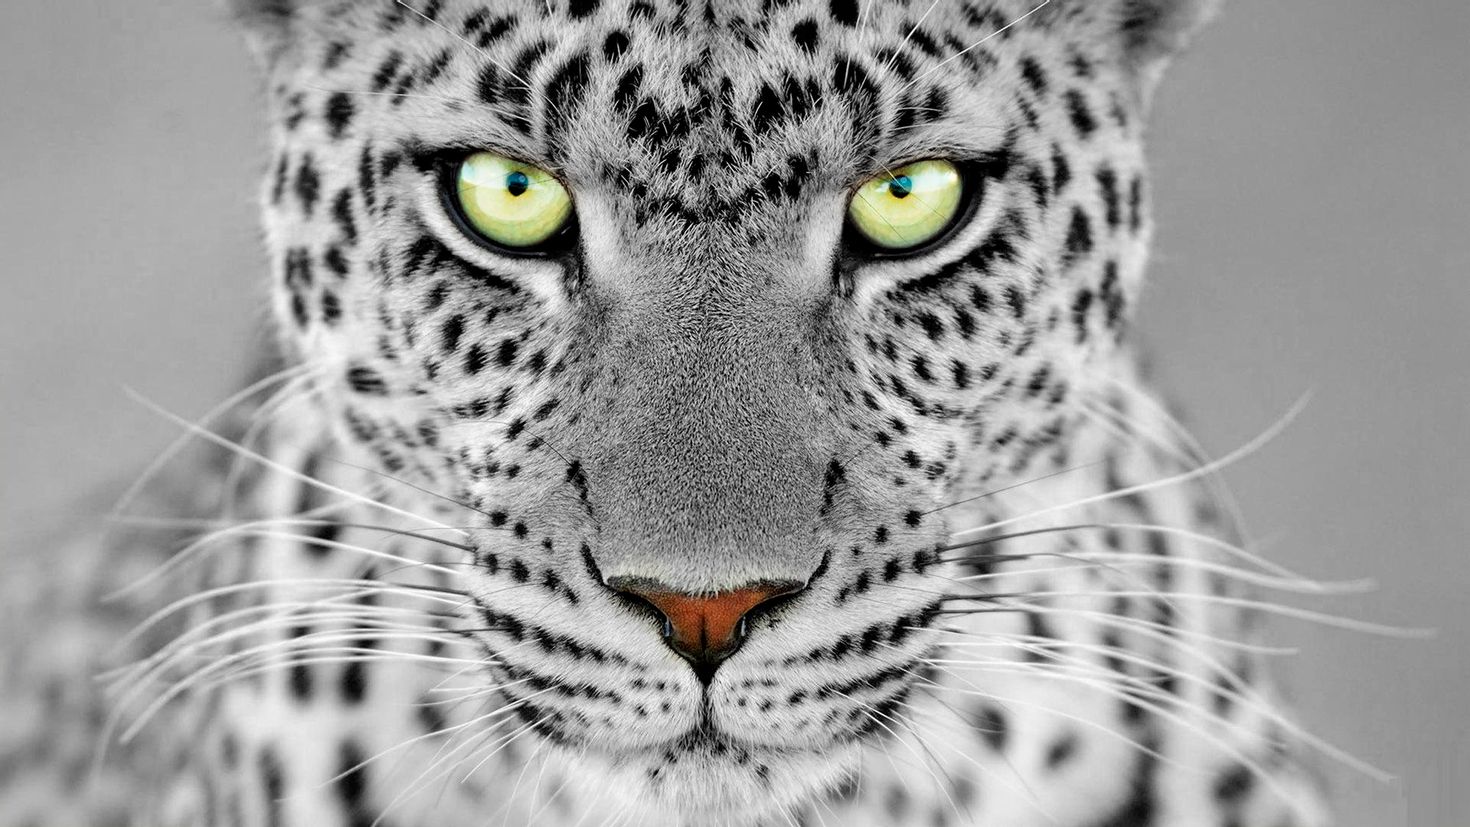 Картинки лиц животных. Барс леопард гепард. Ягуар и леопард. Леопард гепард Ягуар с зелёными глазами. Леопард снежный Барс Ягуар.